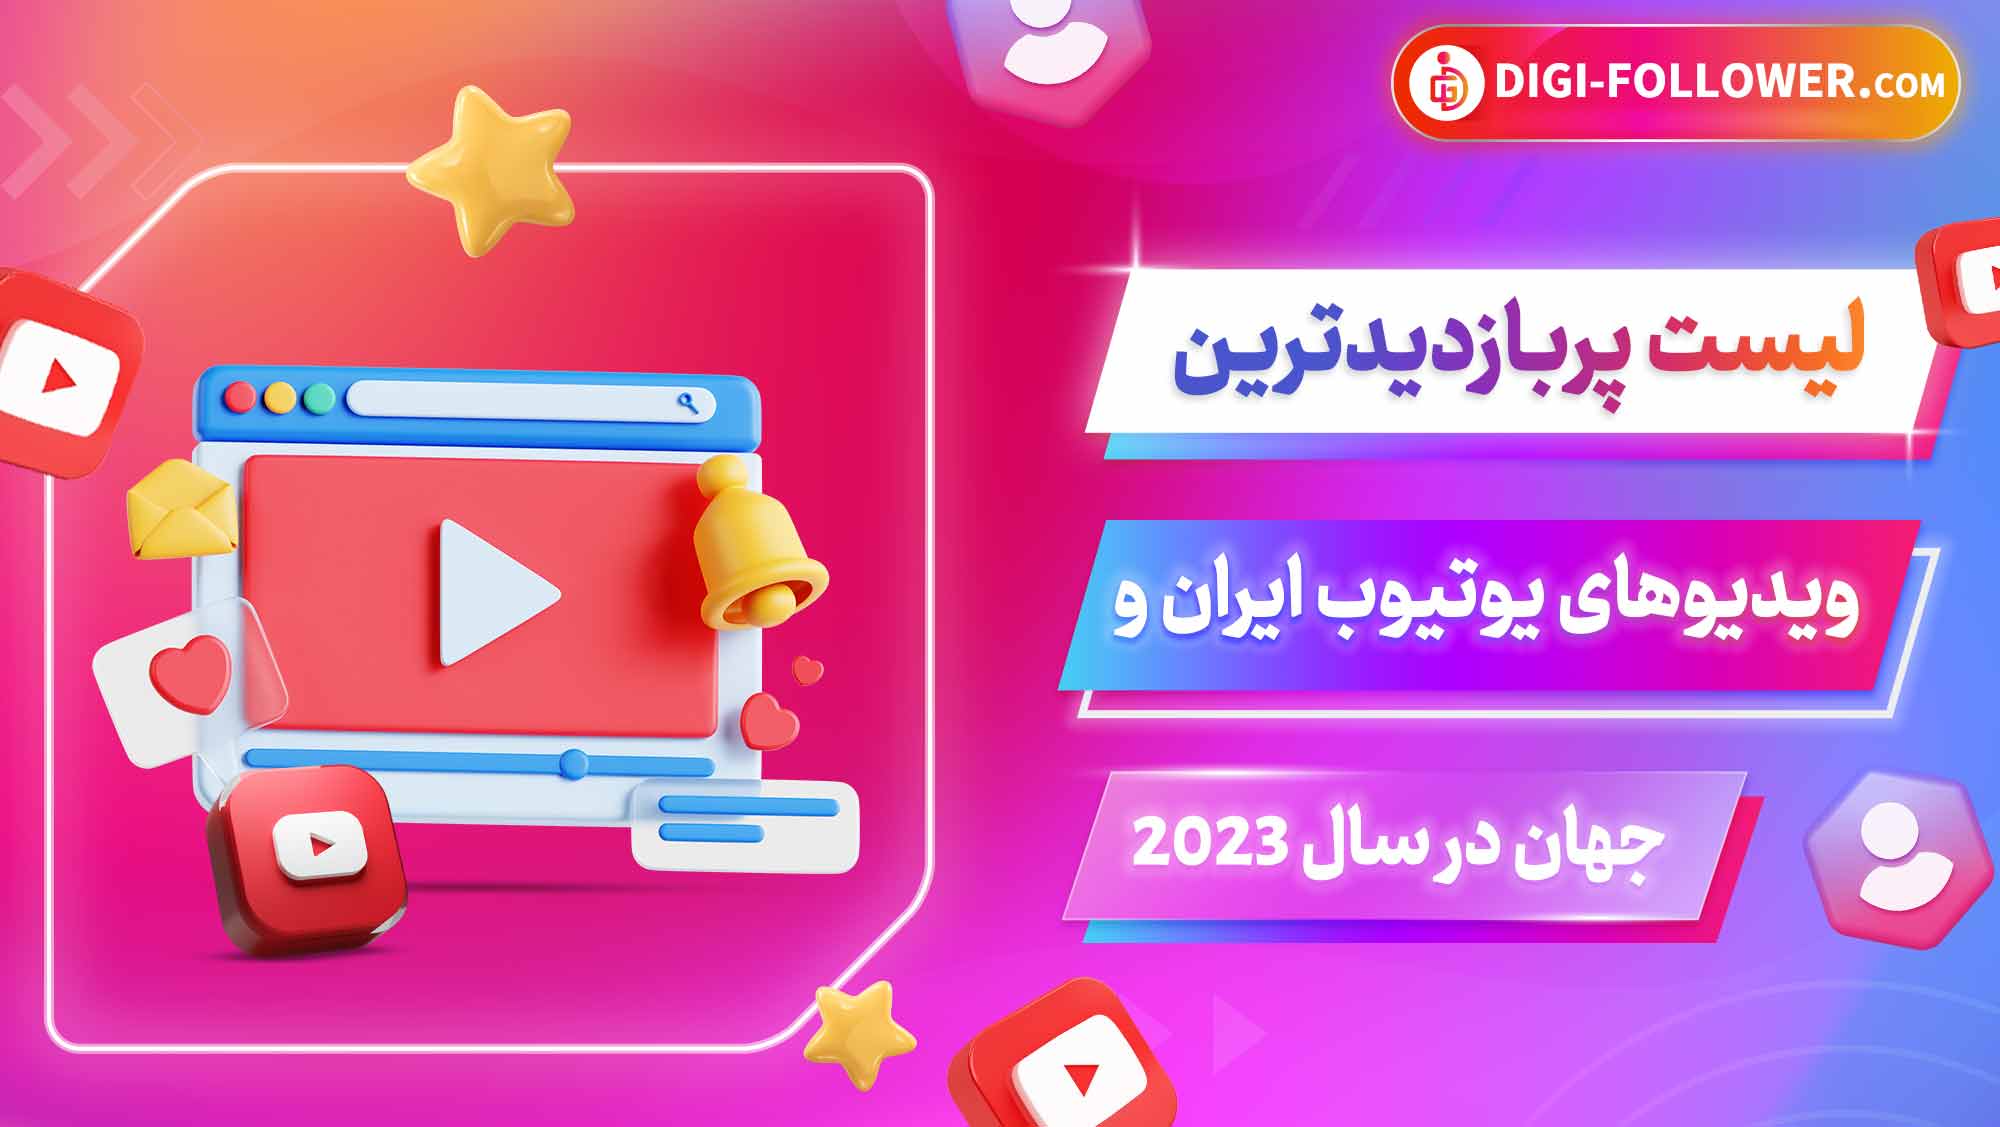 لیست پربازدیدترین ویدیوهای یوتیوب ایران و جهان در سال 2023